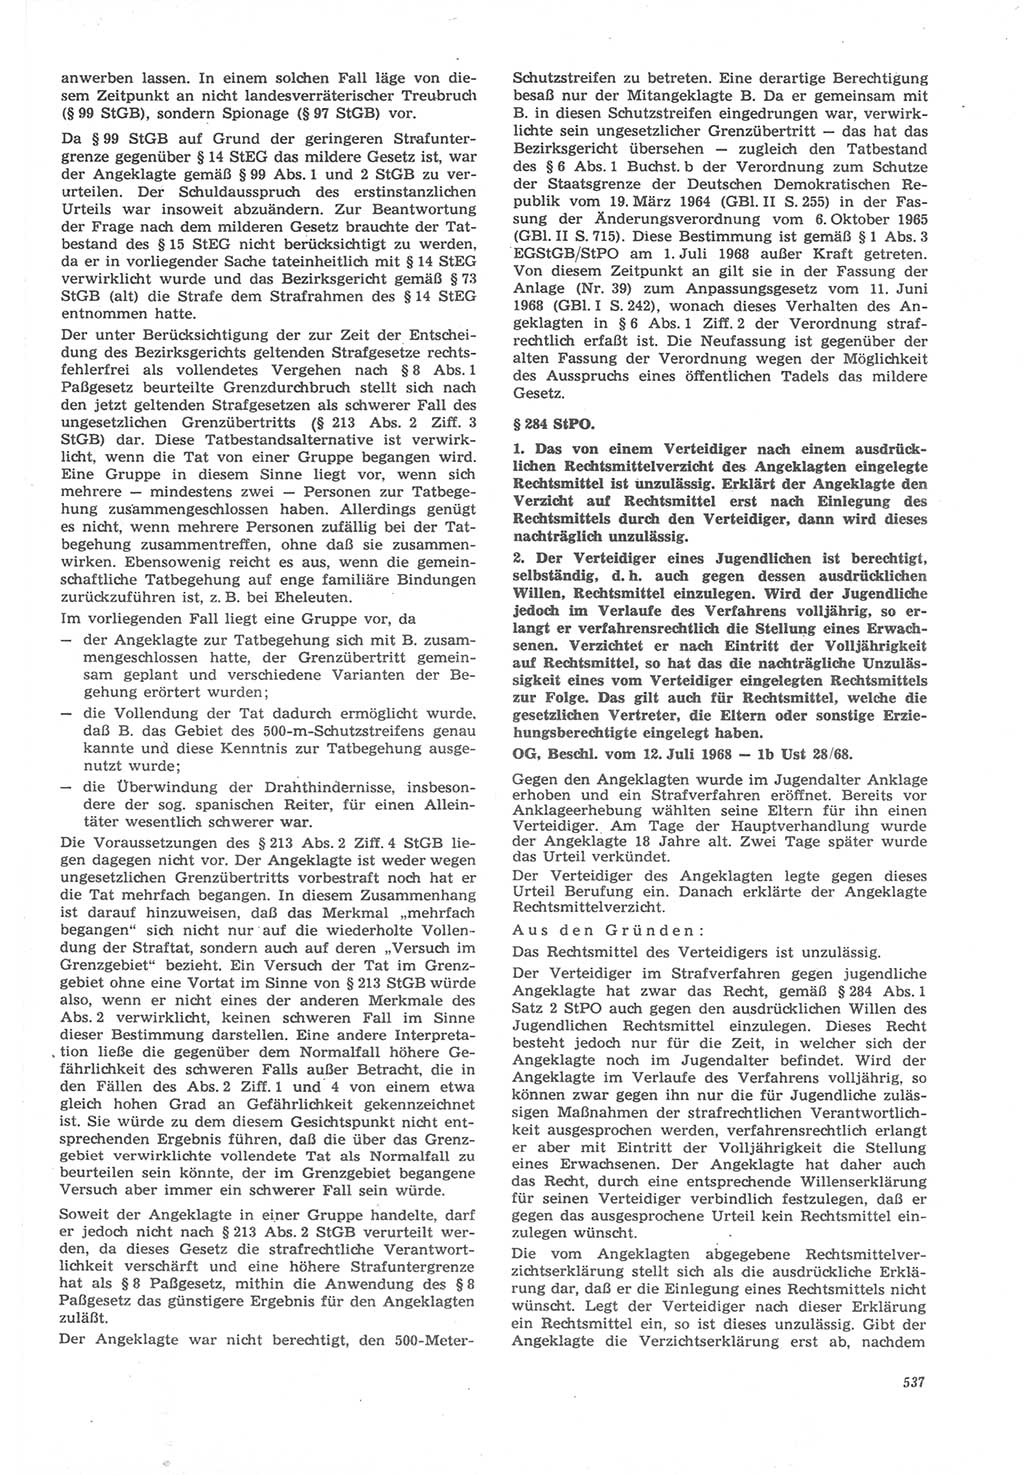 Neue Justiz (NJ), Zeitschrift für Recht und Rechtswissenschaft [Deutsche Demokratische Republik (DDR)], 22. Jahrgang 1968, Seite 537 (NJ DDR 1968, S. 537)